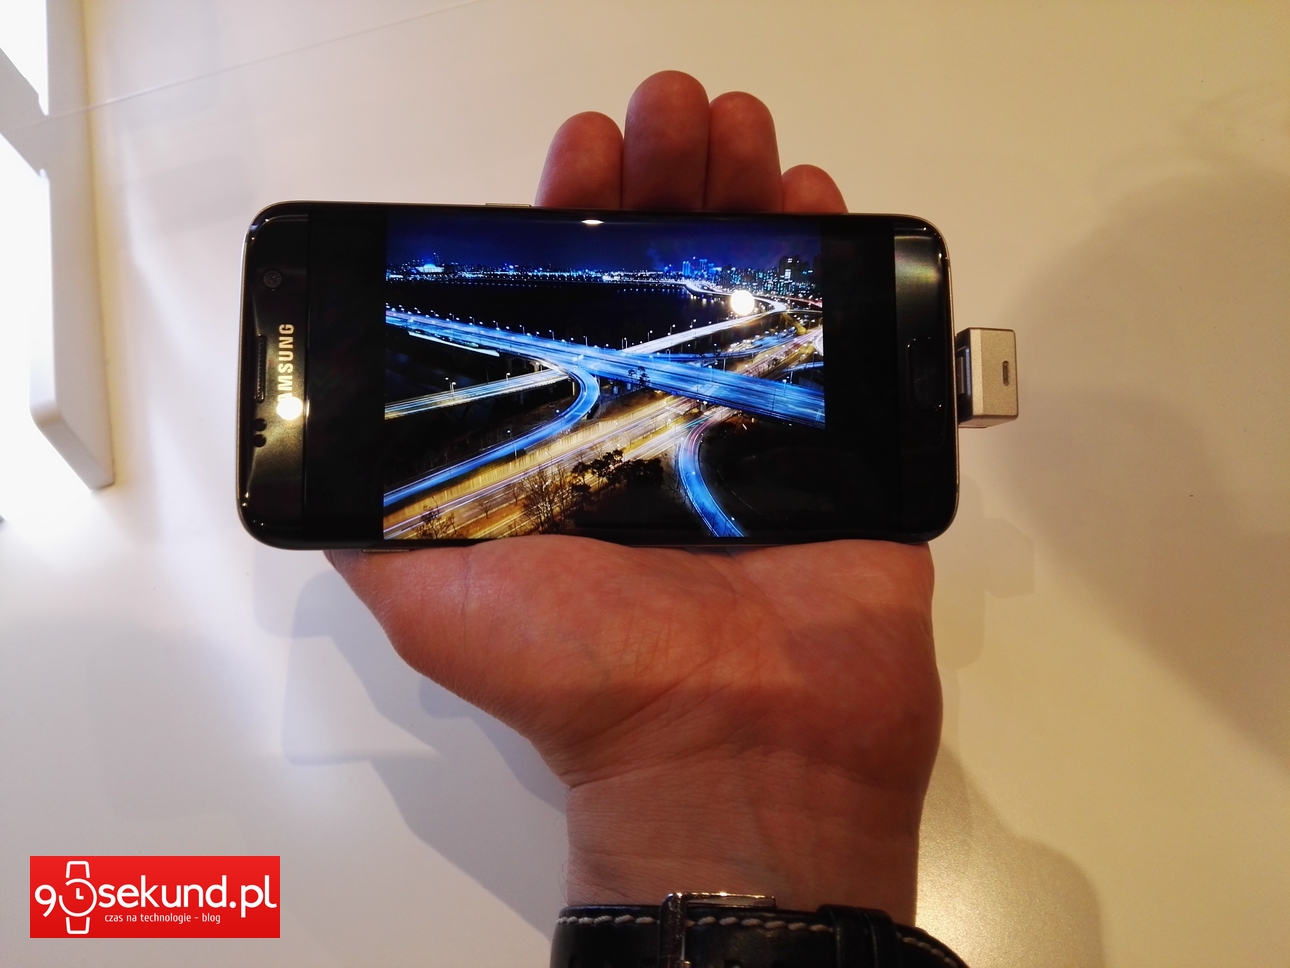 Samsung Galaxy S7/S7 Edge - 90sekund.pl